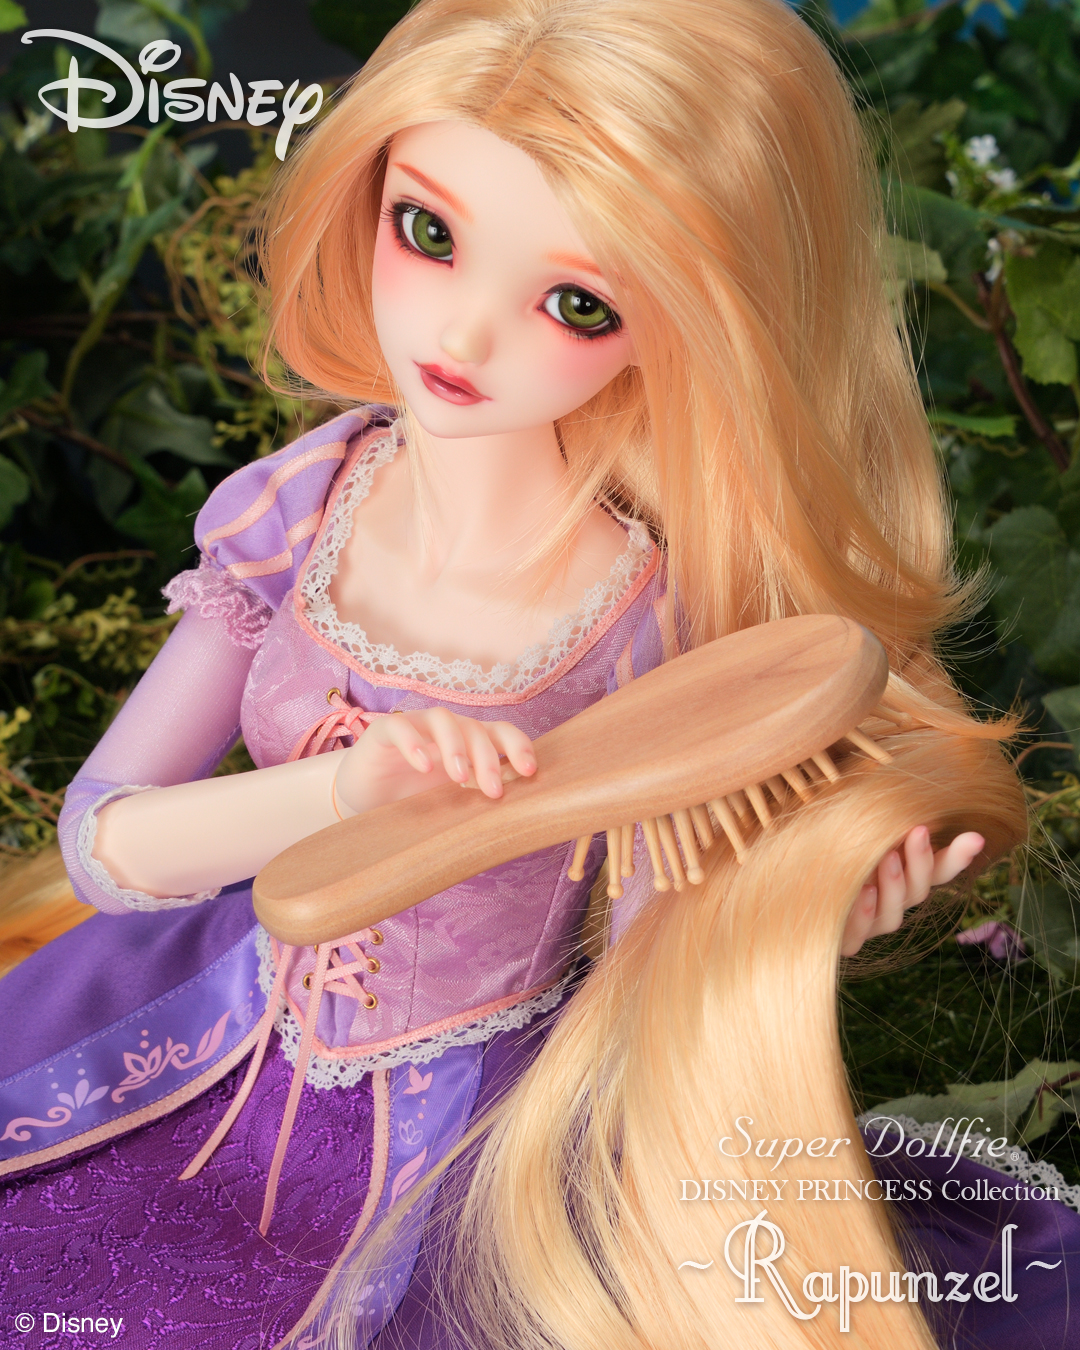 Super Dollfie DISNEY PRINCESS Collection ~Rapunzel~ | Super Dollfie ディズニーコレクション公式ウェブサイト | ボークス公式 ドルフィー総合サイト